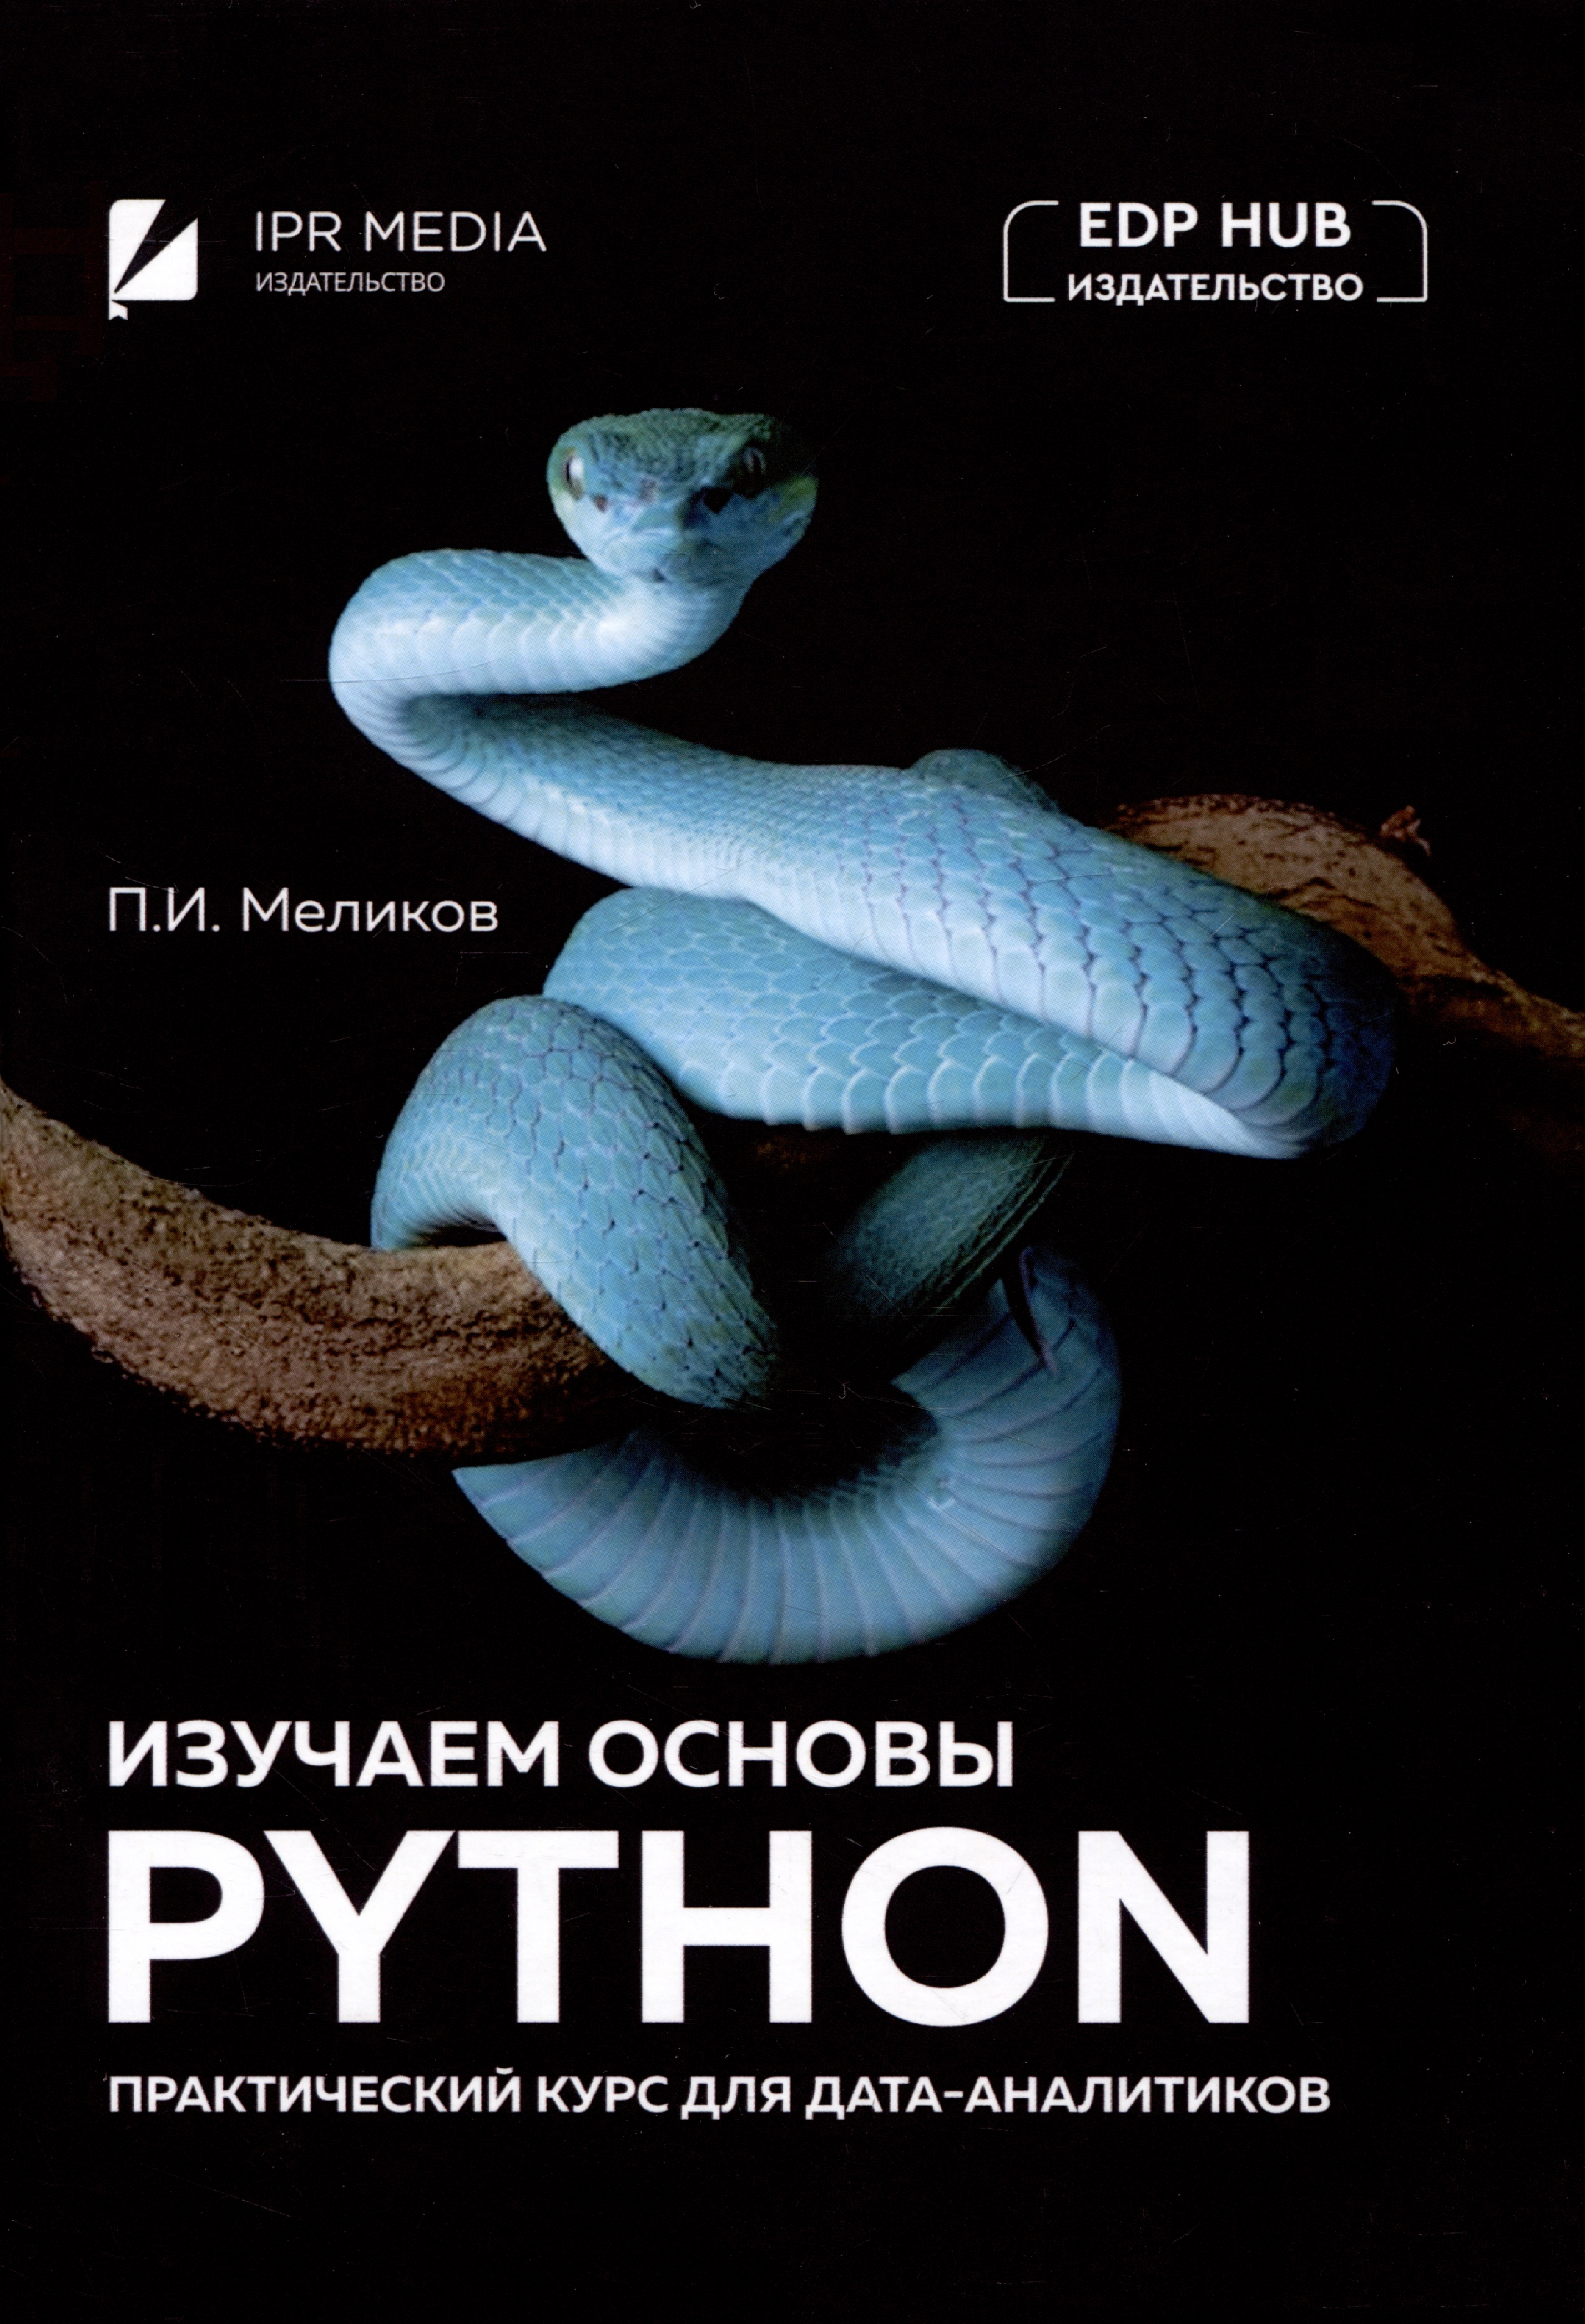 Меликов Павел Ильич Изучаем основы Python. Практический курс для дата-аналитиков